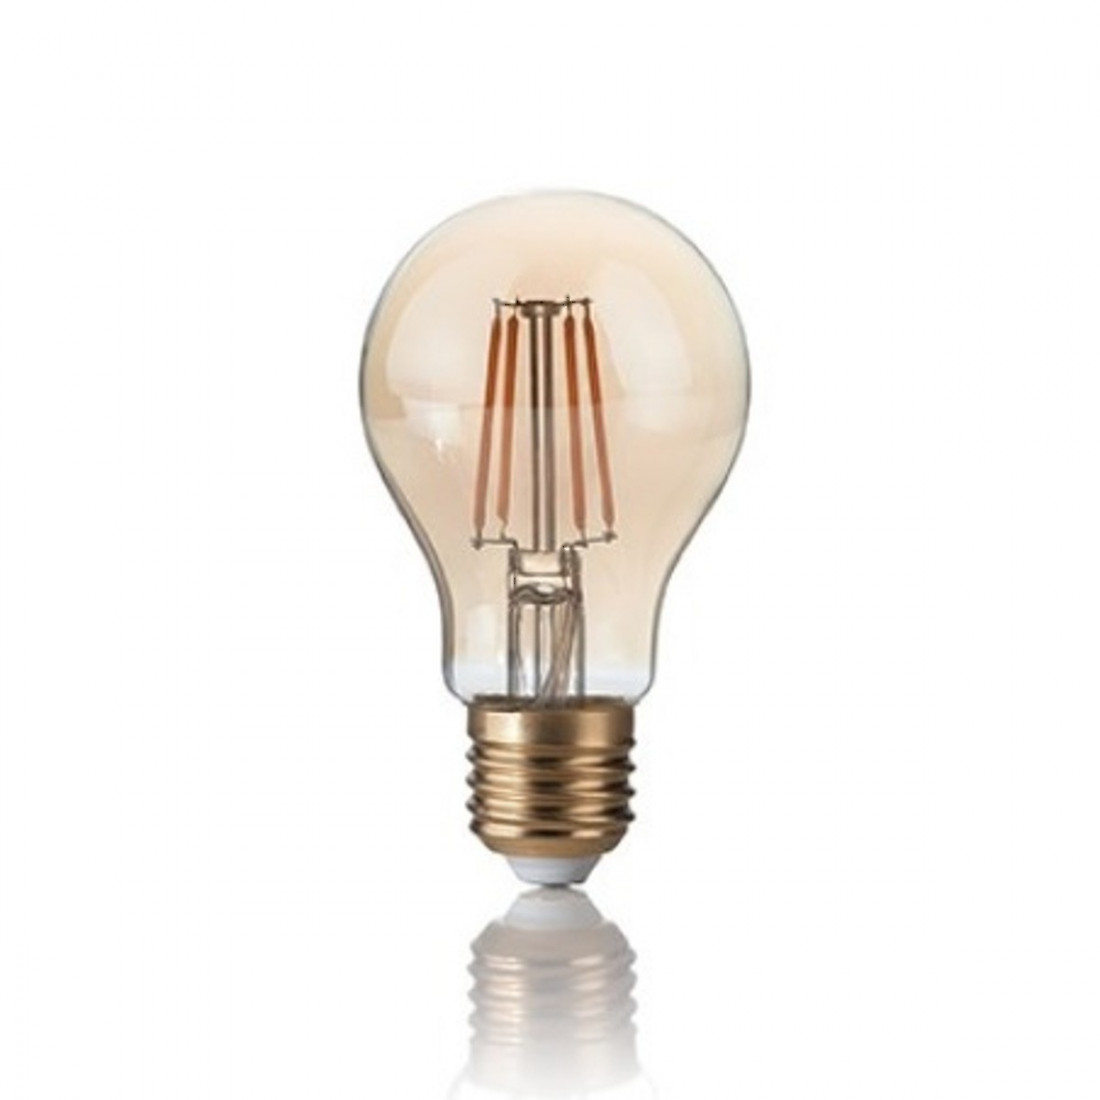 Ampoule ID-VINTAGE E27 4W LED 300LM verre ambré goutte rétro lumière très chaude à l'intérieur